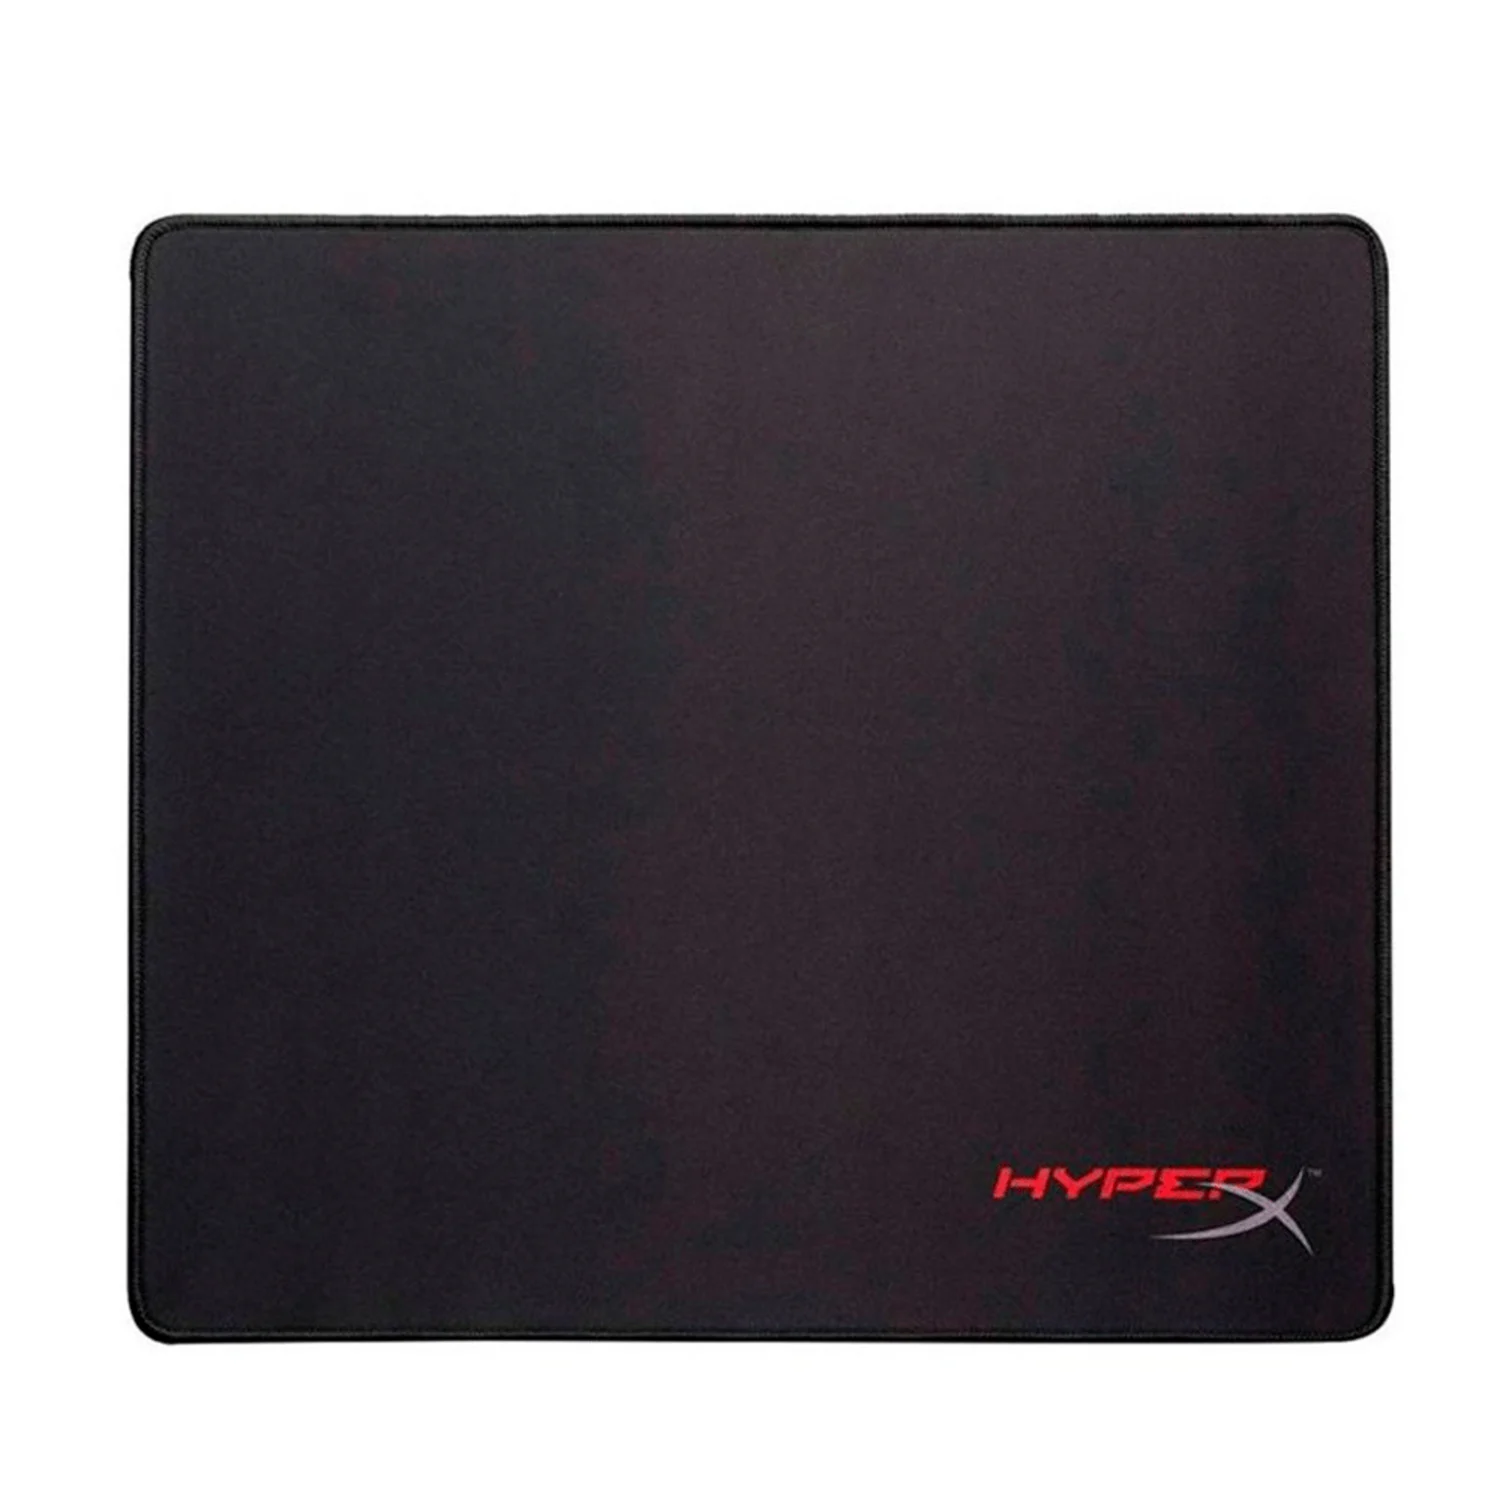 Mousepad Gamer Kingston HyperX Pro Grande - Preto (HX-MPFS-L)